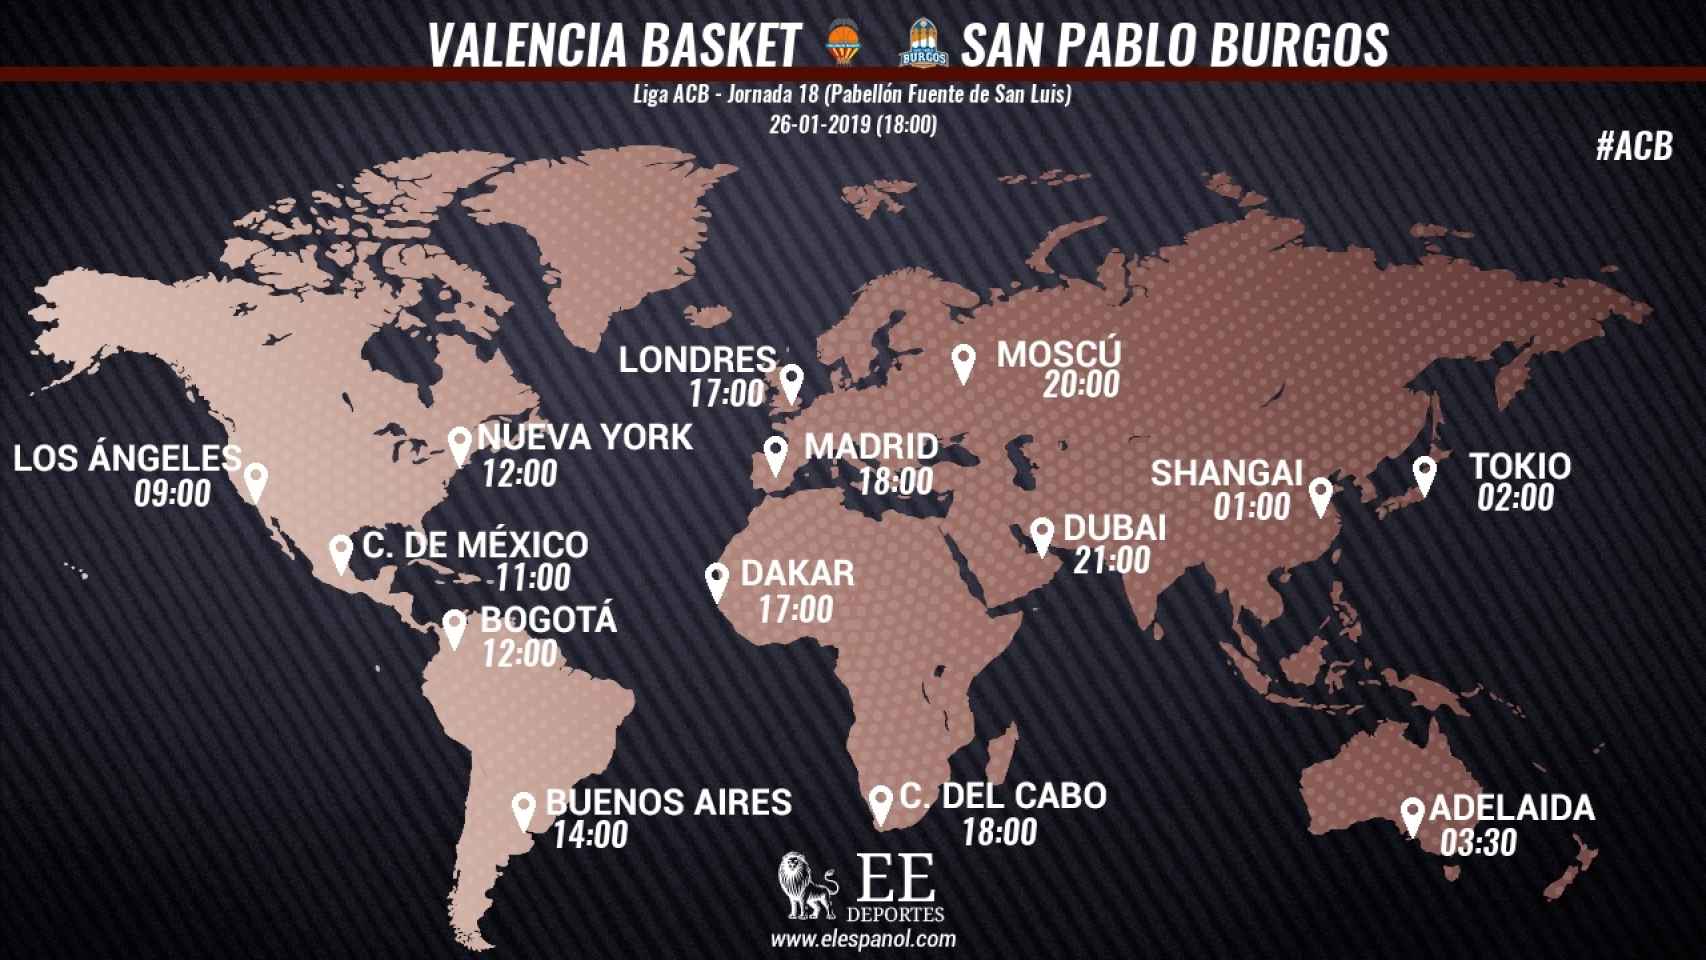 Horario del Valencia Basket - San Pablo Burgos